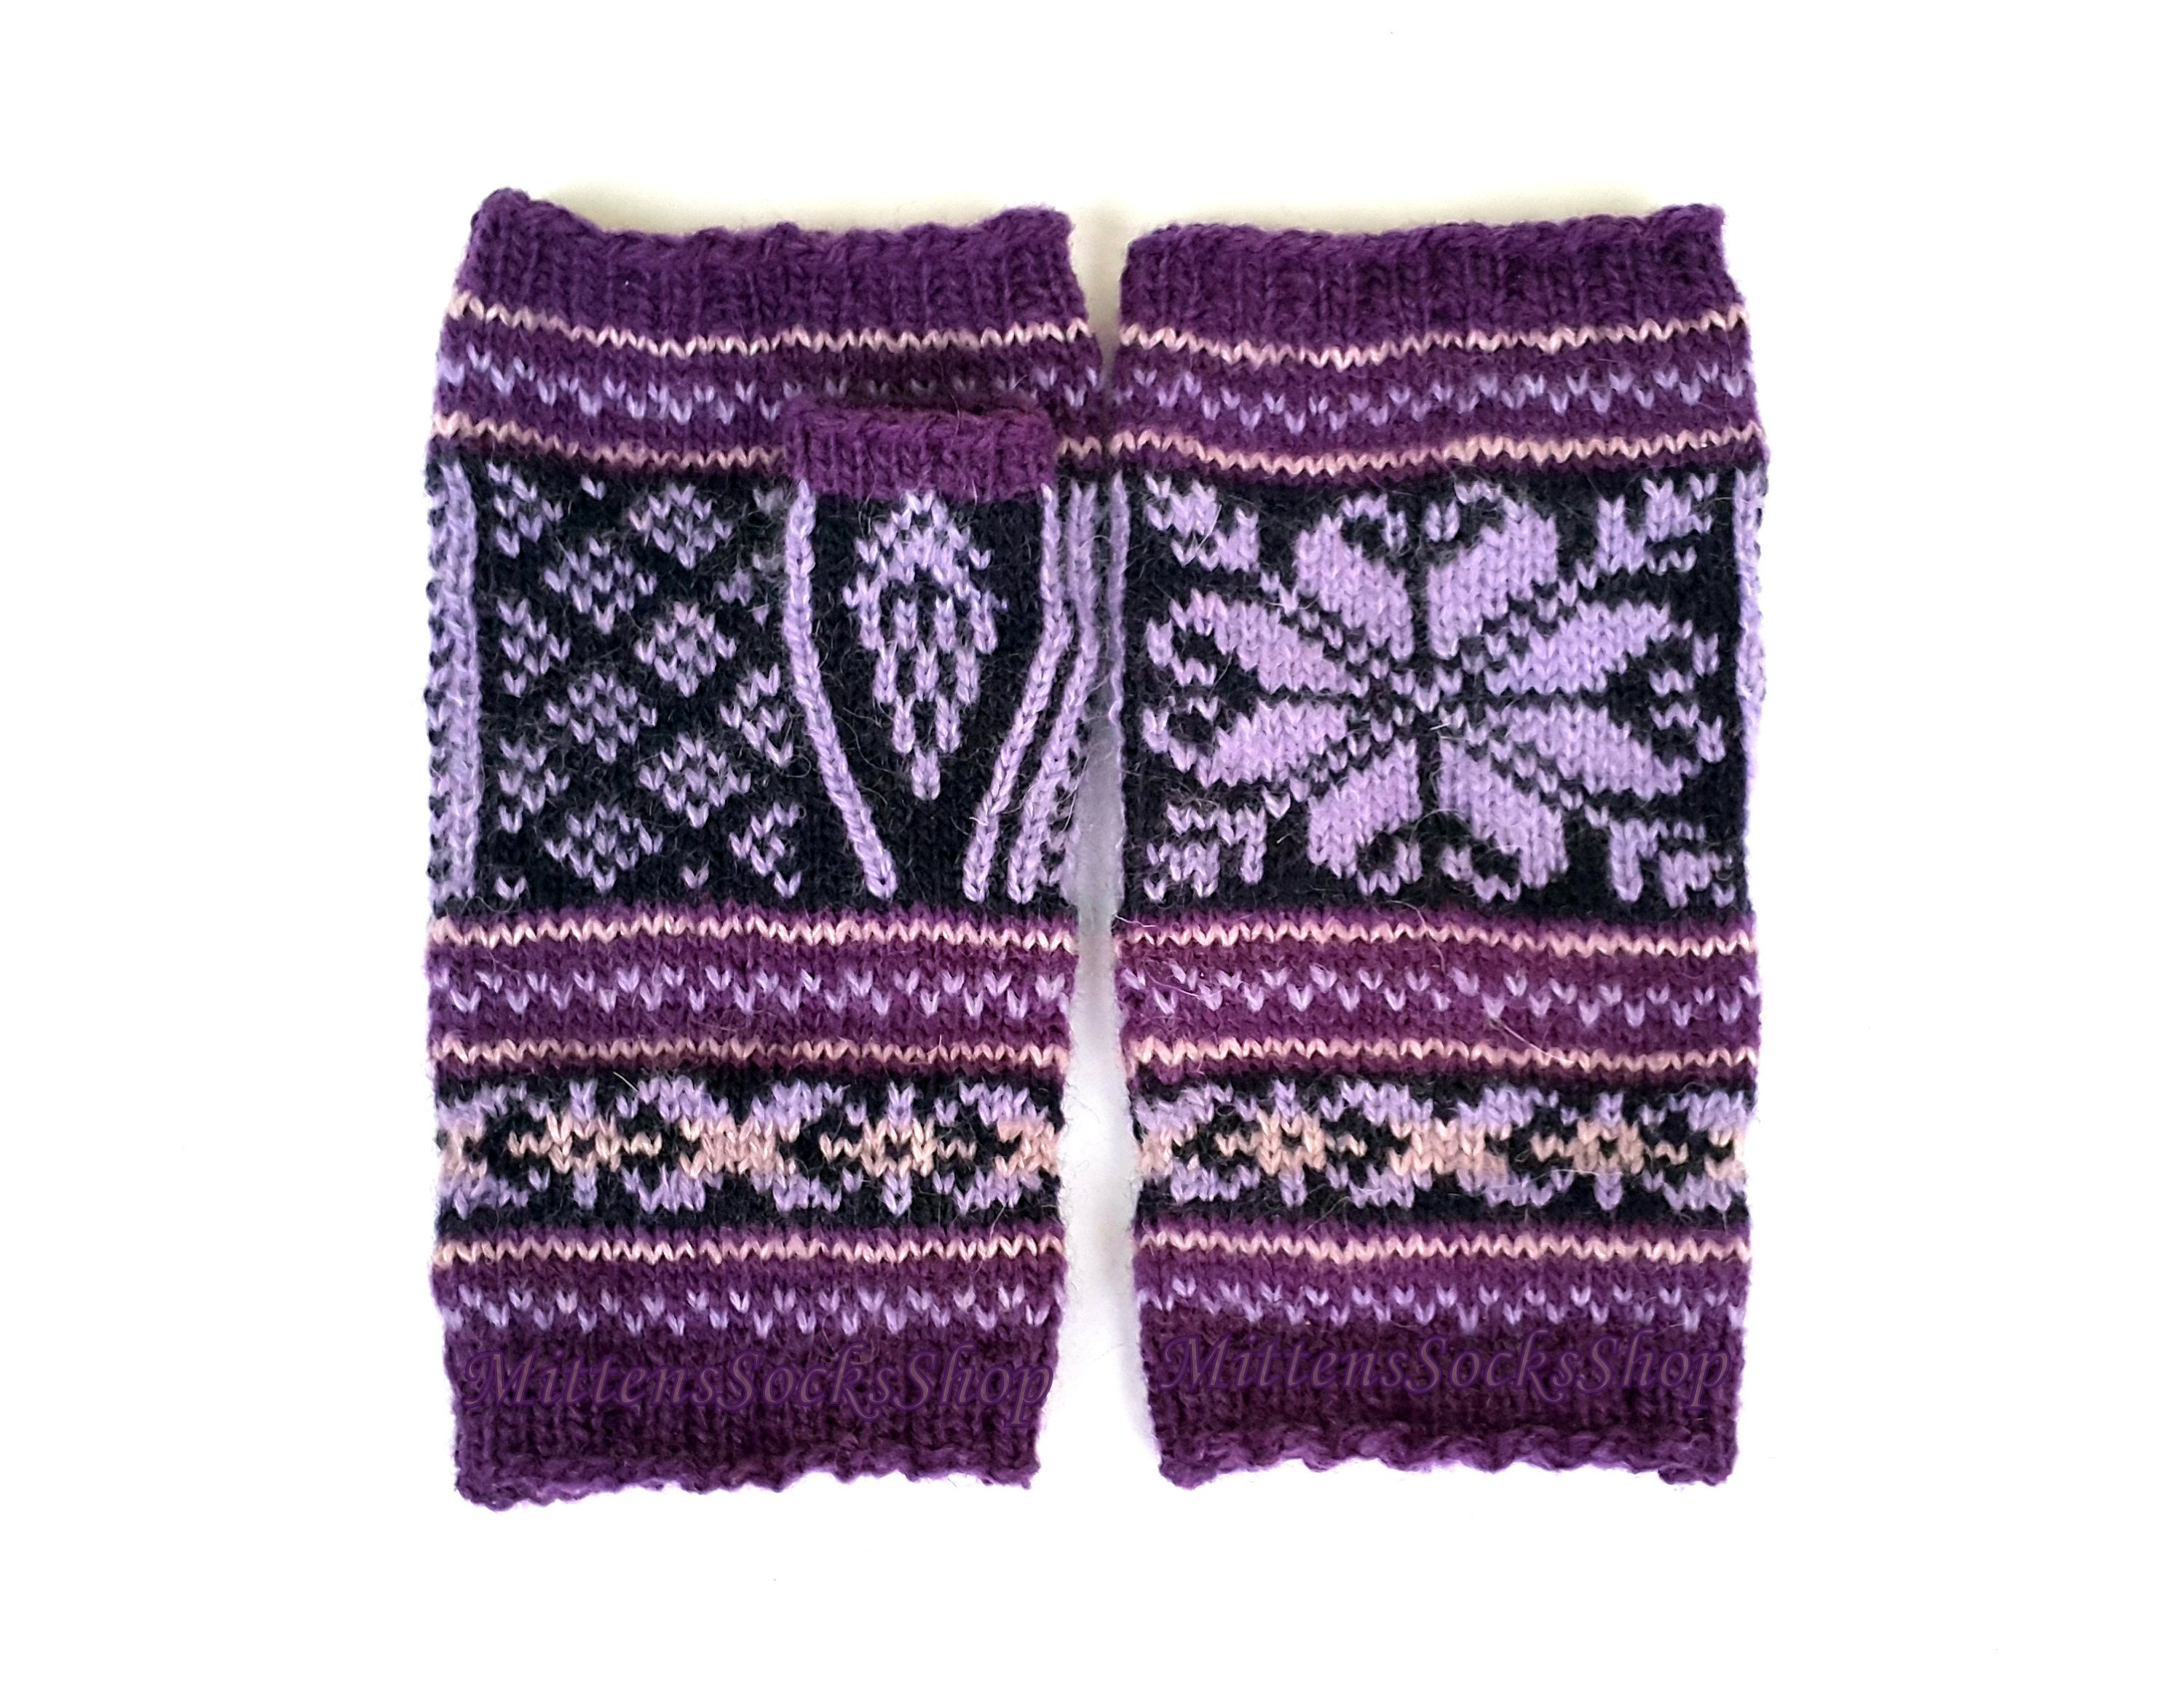 Fingerless Gloves Hand Knit Purple Black Fingerless Gloves | Etsy